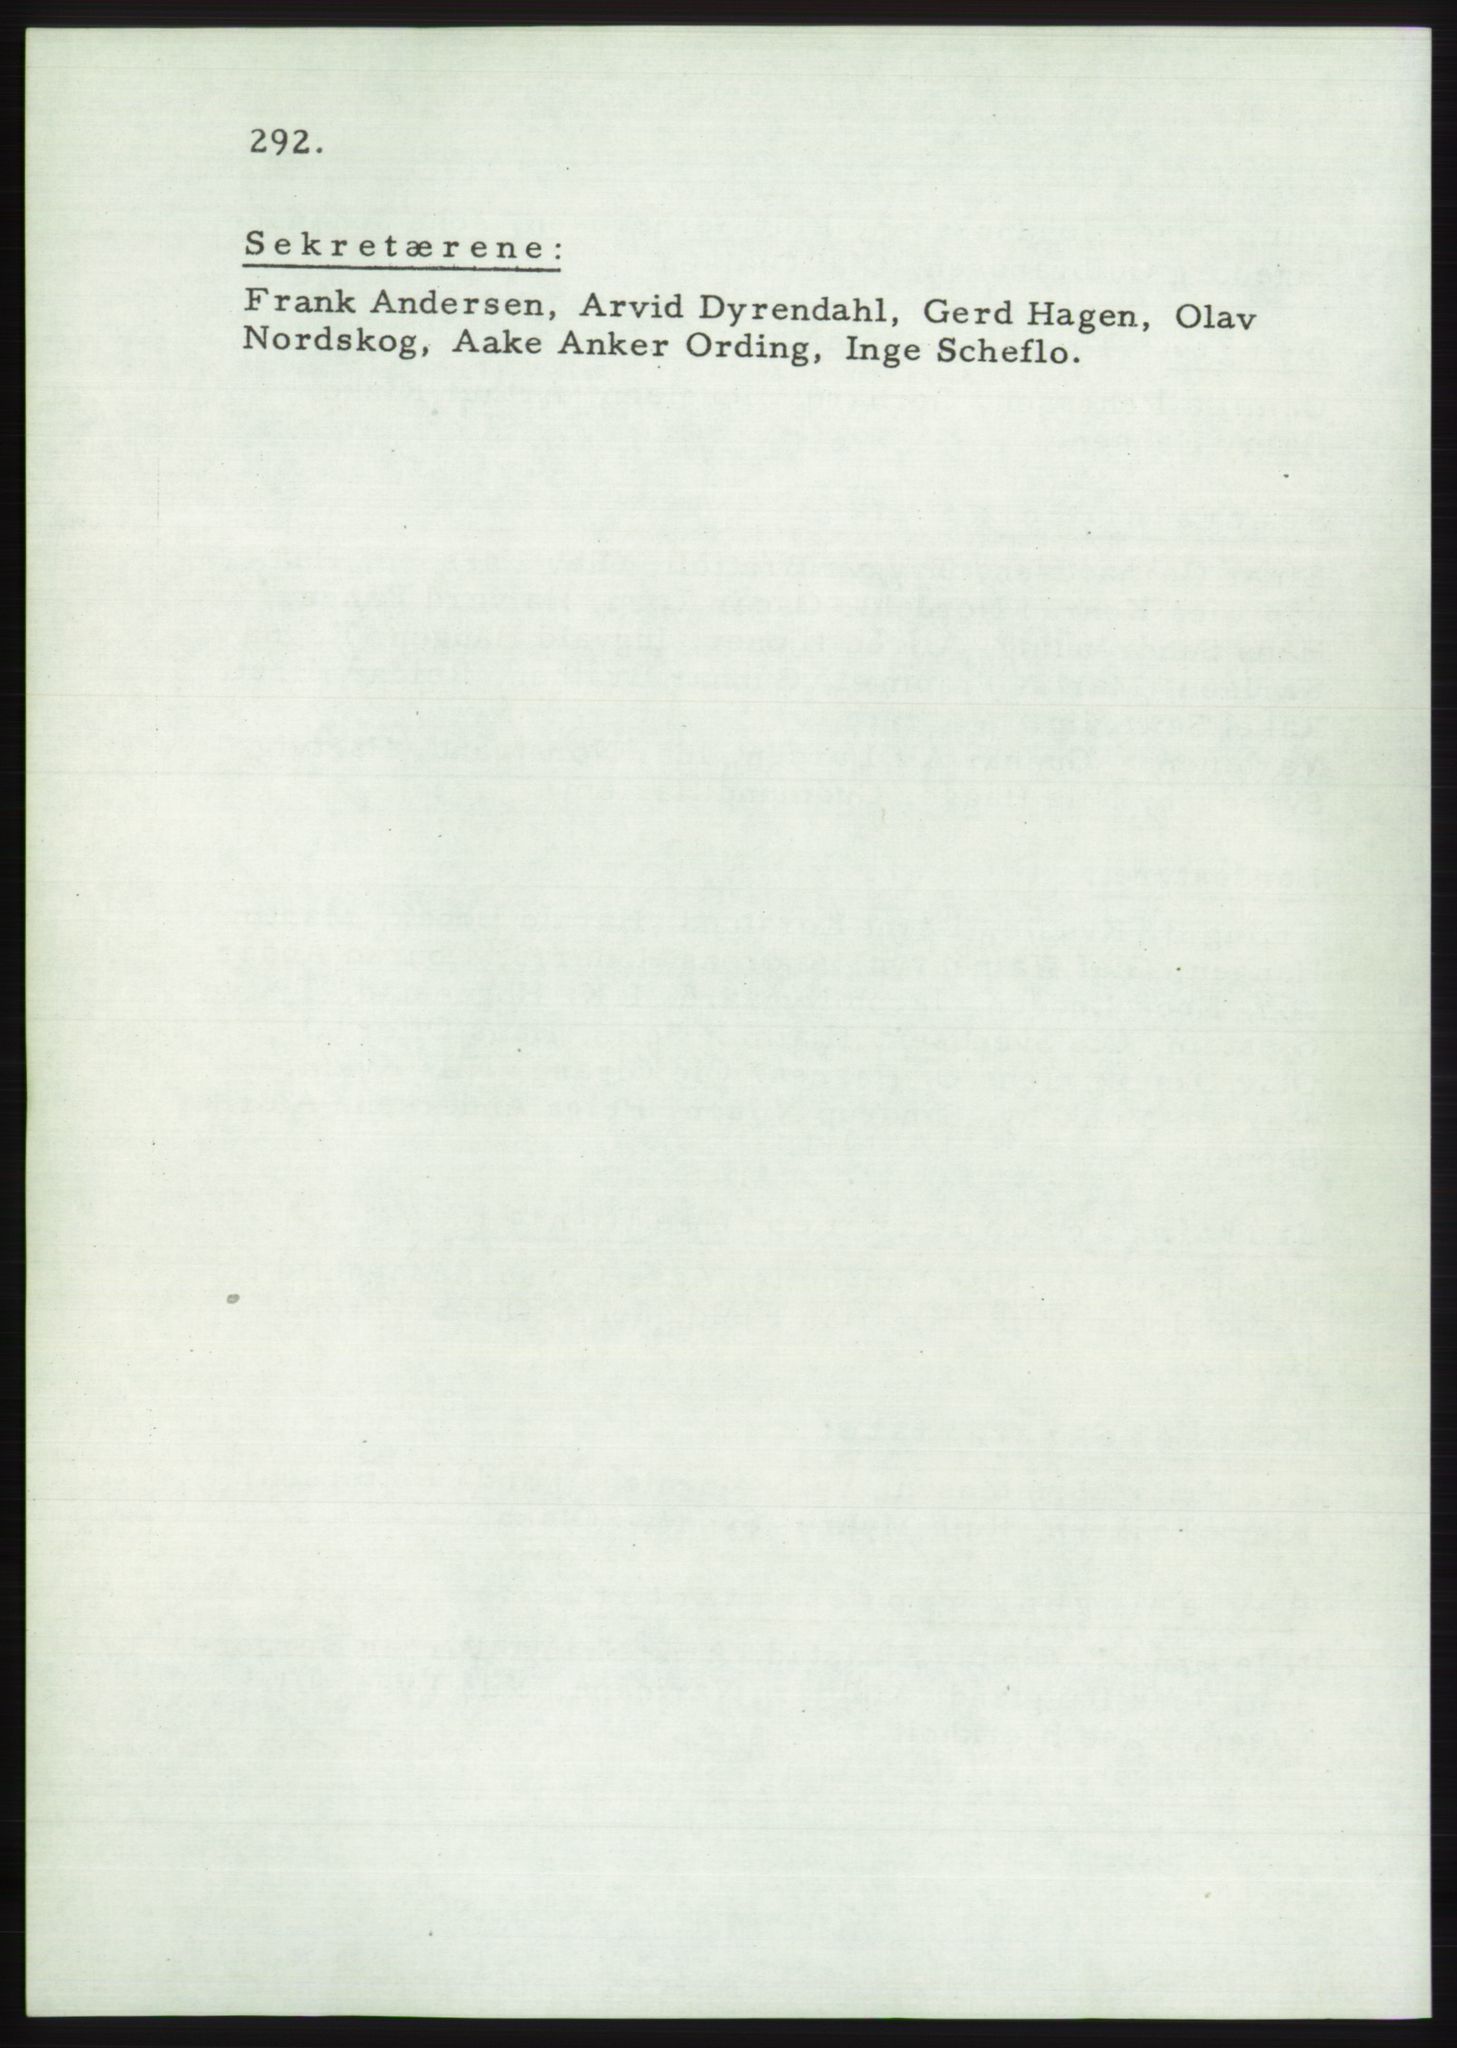 Det norske Arbeiderparti - publikasjoner, AAB/-/-/-: Protokoll over forhandlingene på det 36. ordinære landsmøte 30.-31. mai og 1. juni 1957 i Oslo, 1957, p. 292